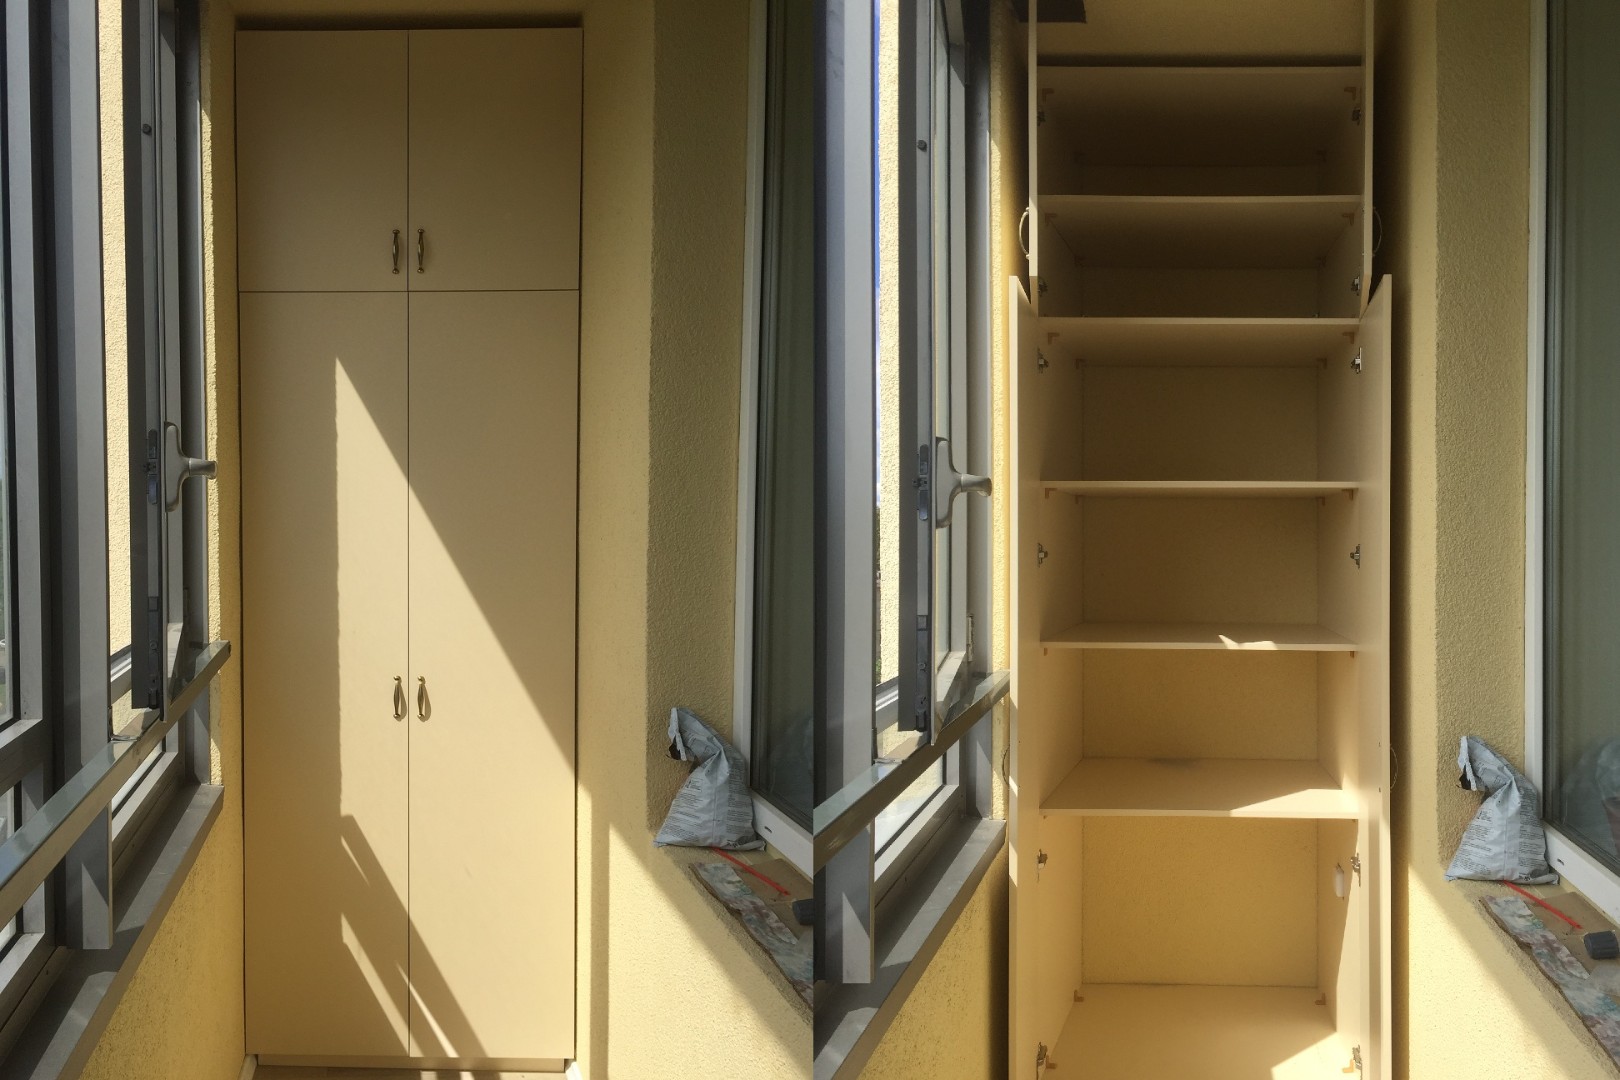 Шкаф на балкон: удачный выбор для практичности и комфорта